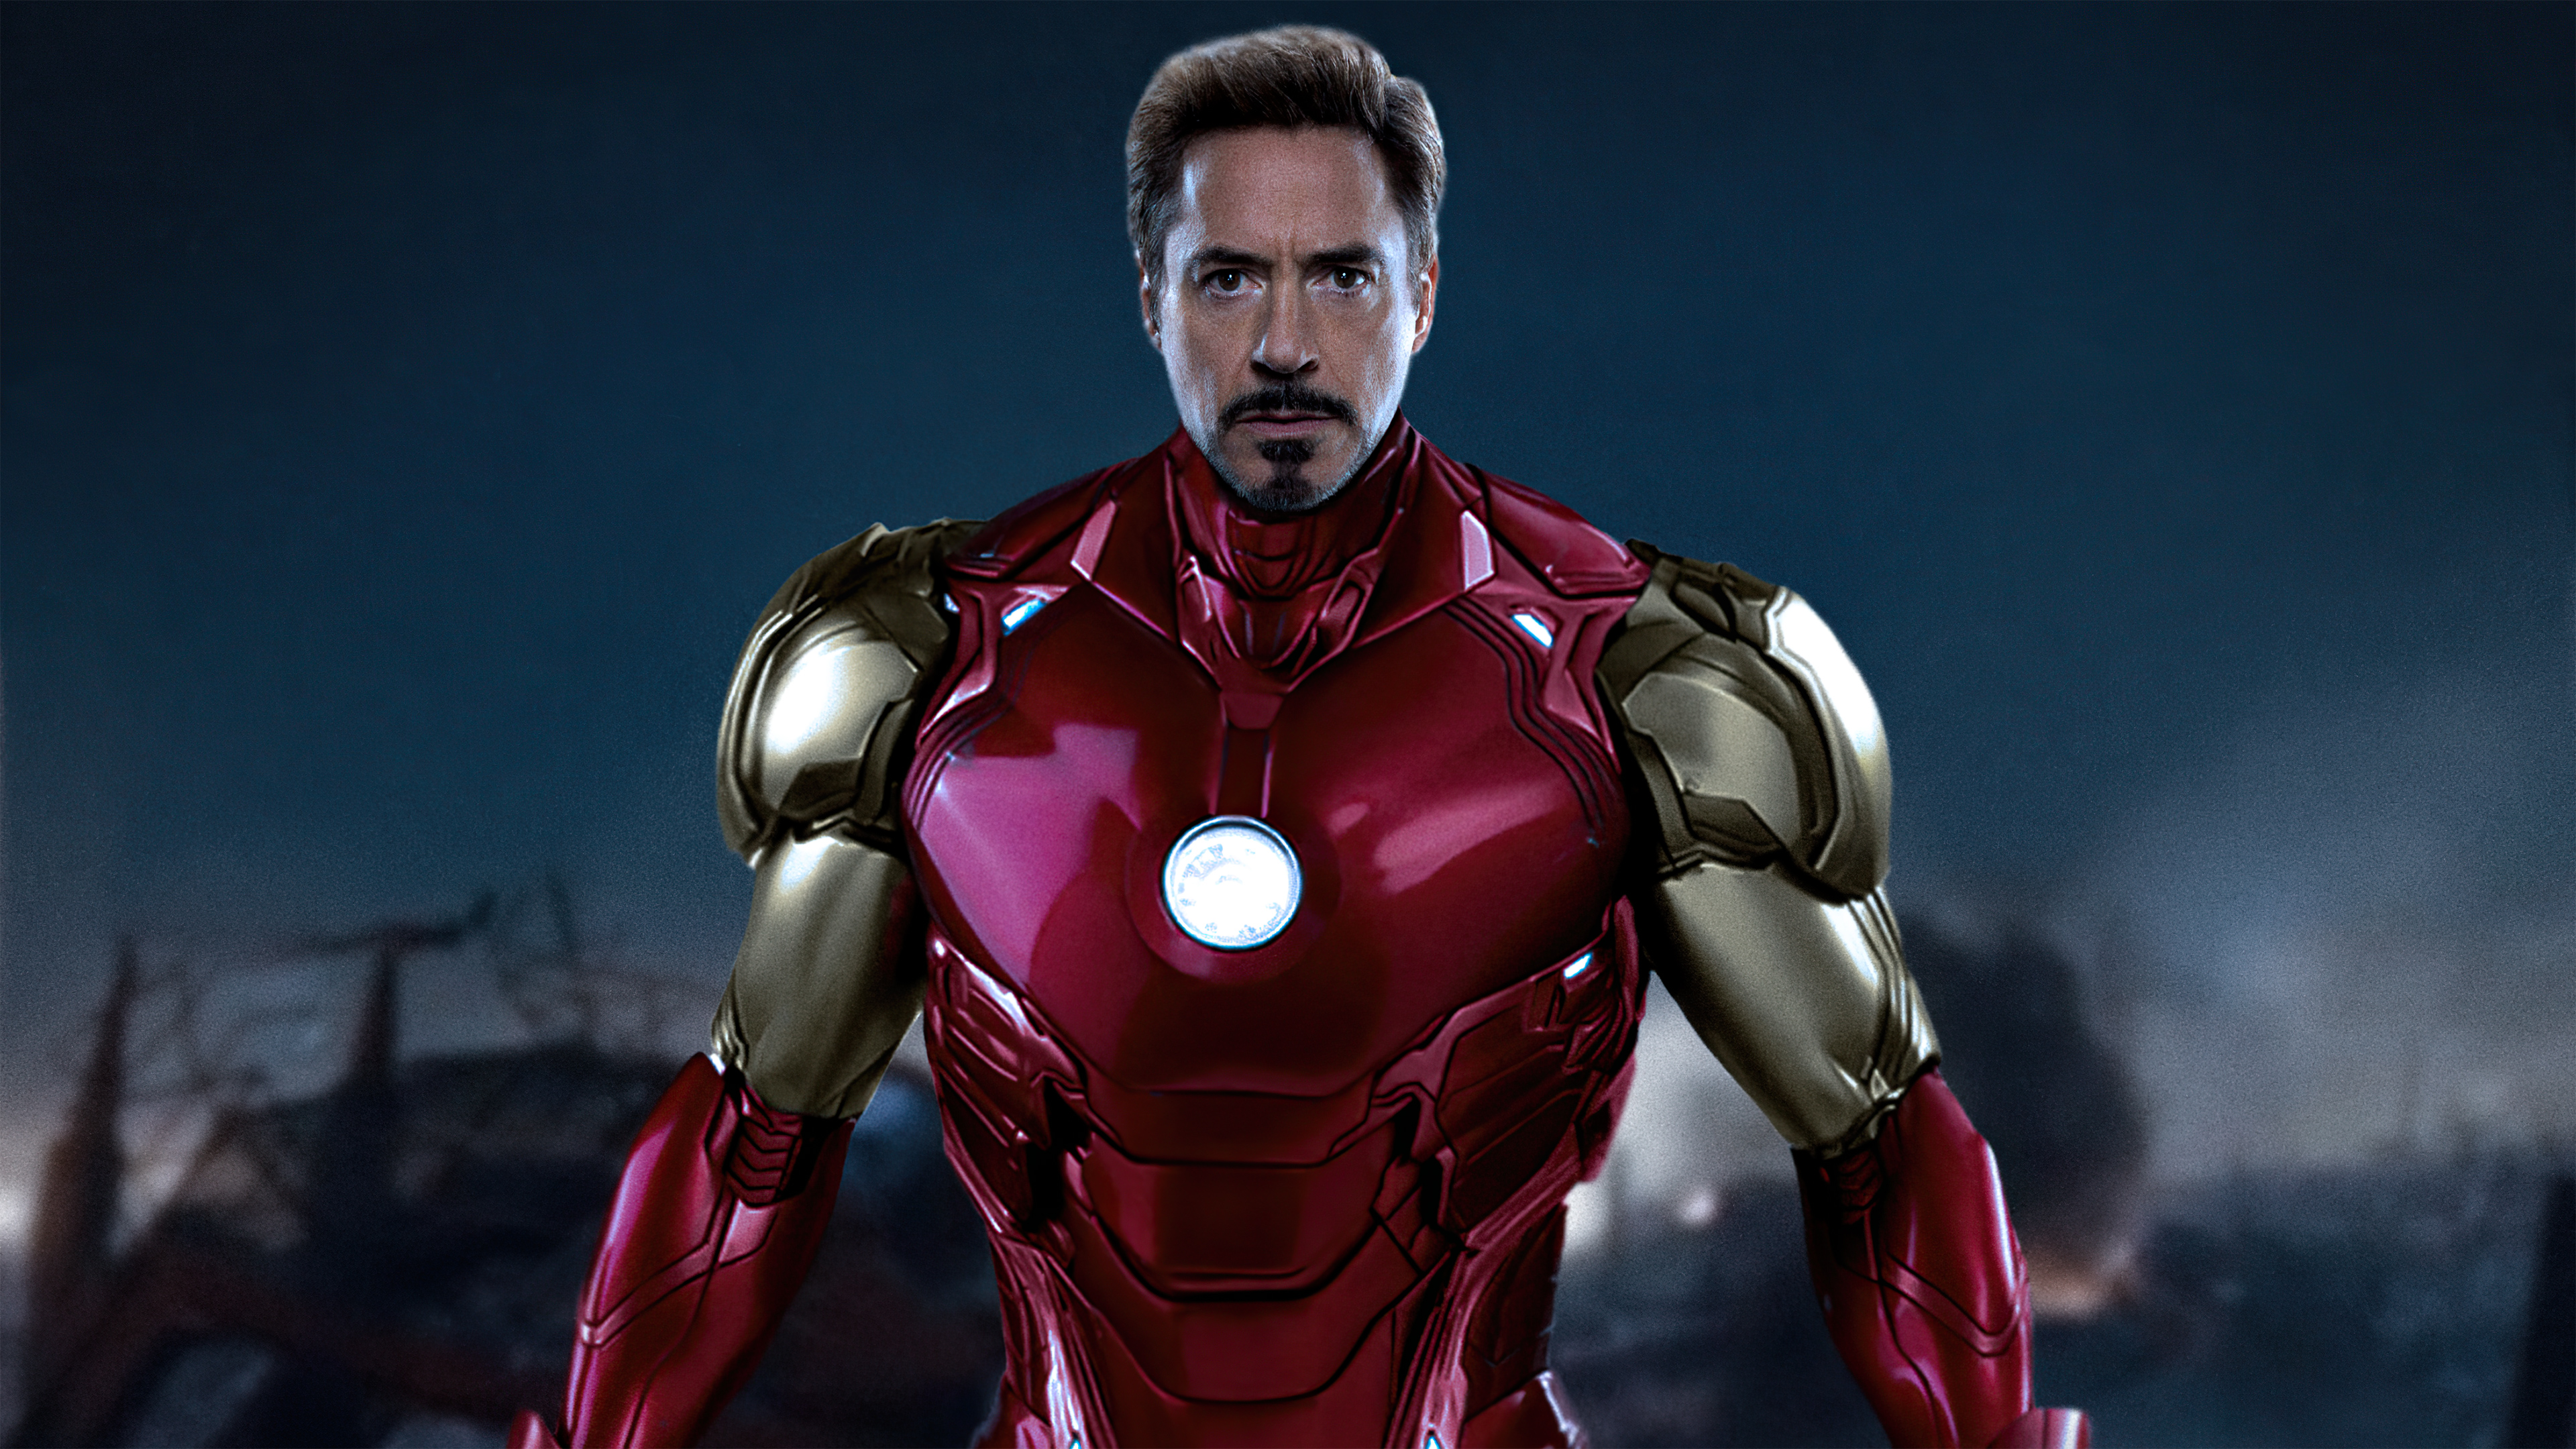 Tony Stark as Iron Man Wallpaper 4k Ultra HD ID:9224